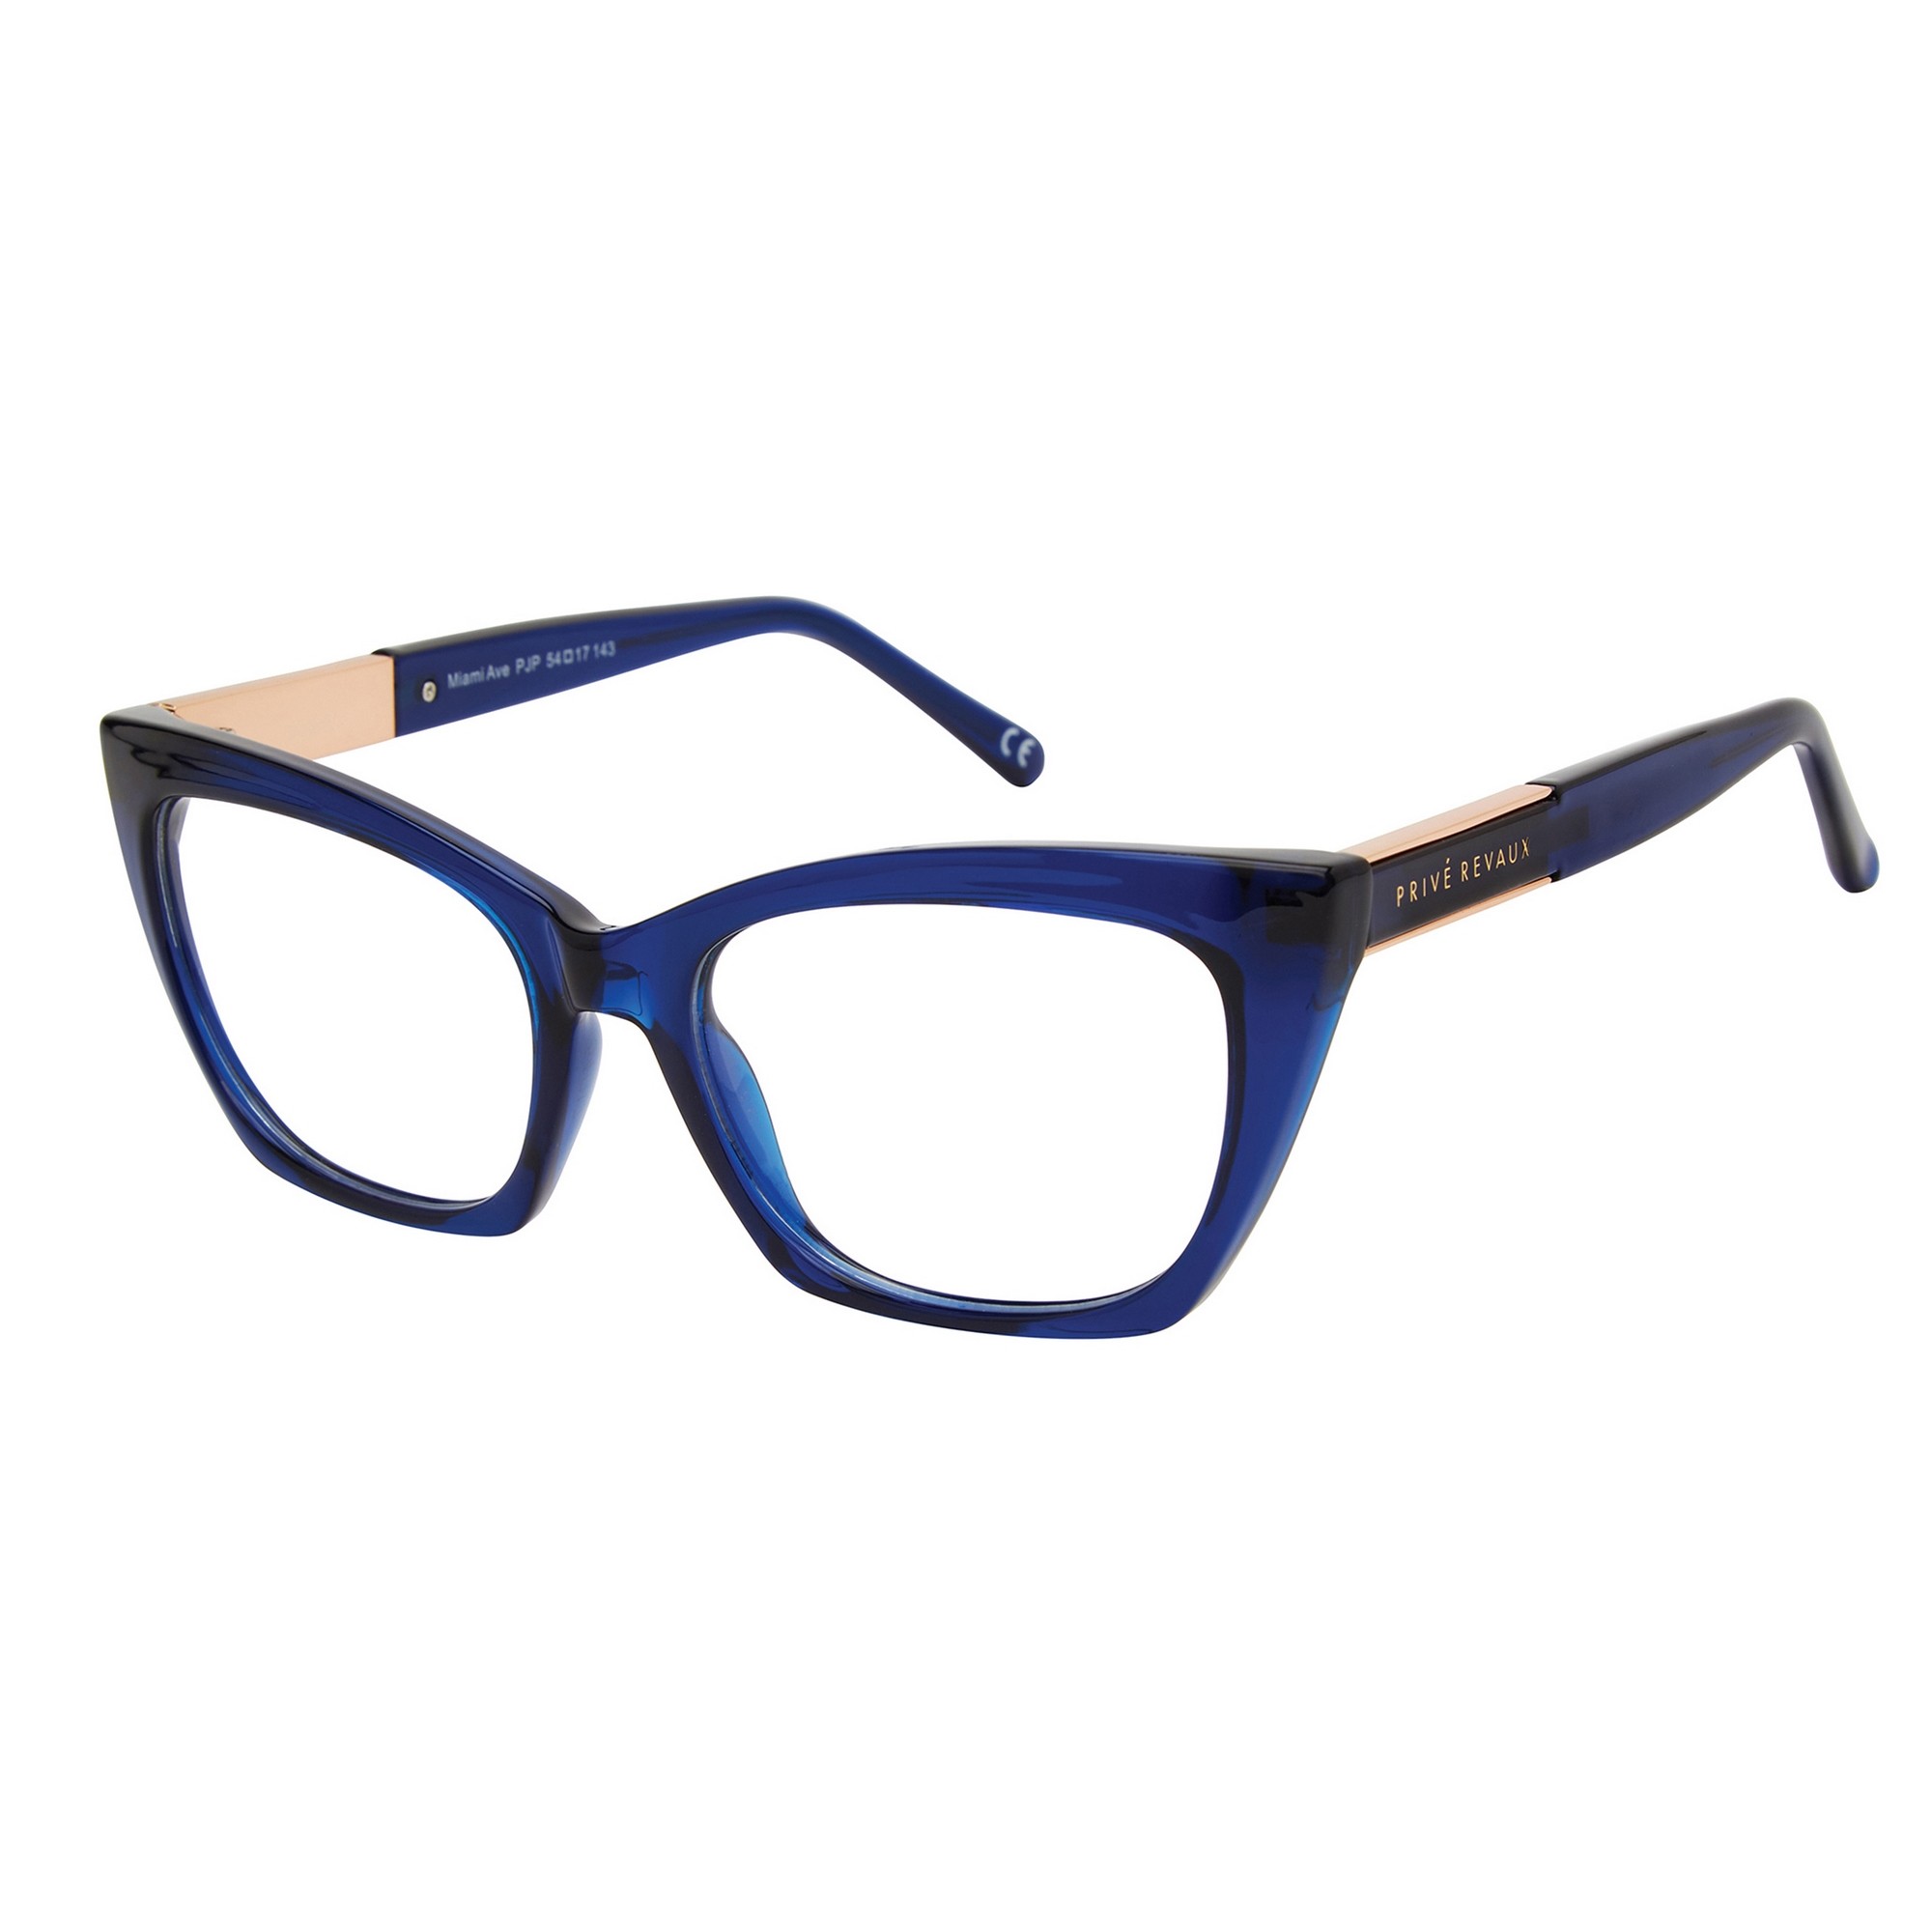 Prive Revaux MIAMI AVE - PJP Blue | Eyeglasses Woman